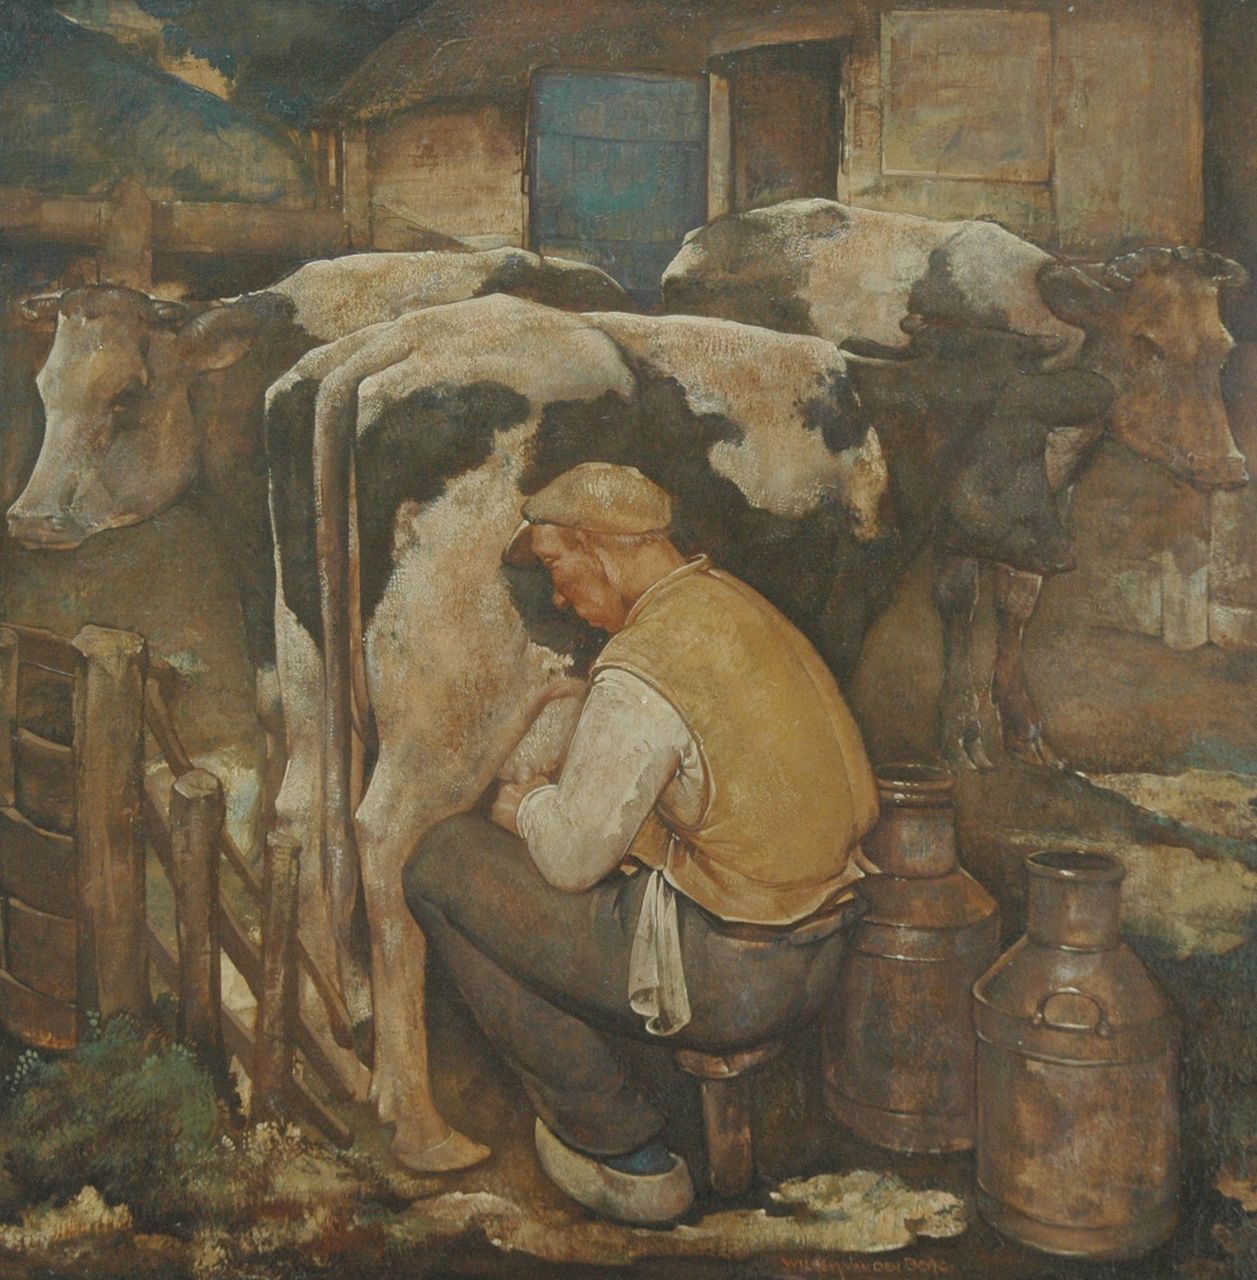 Berg W.H. van den | 'Willem' Hendrik van den Berg, Melkende boer, olieverf op paneel 39,9 x 39,9 cm, gesigneerd rechts van het midden.